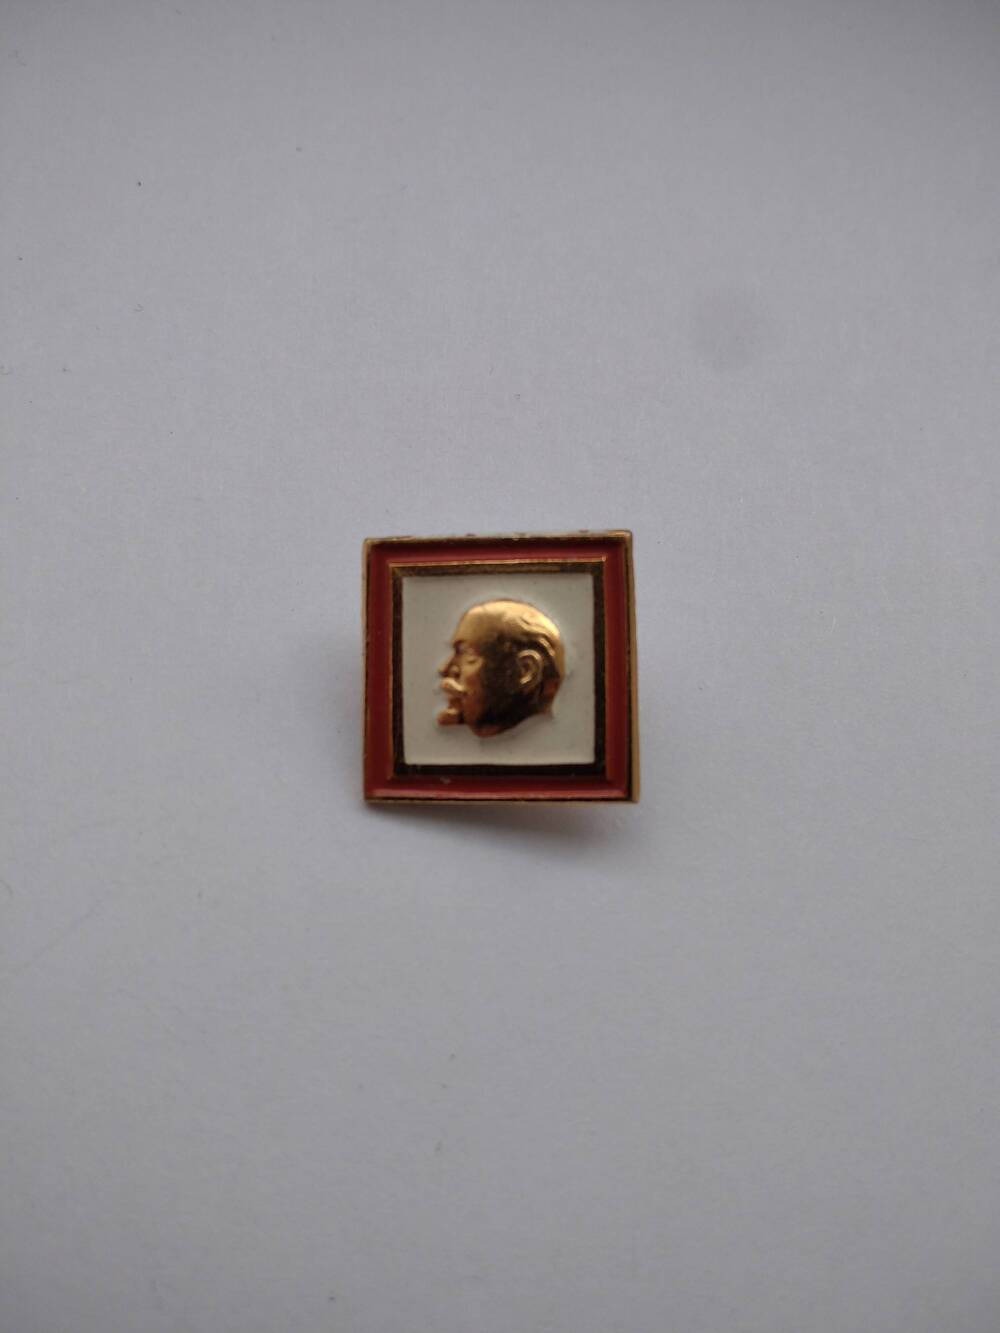 Значок квадратный с барельефом головы В.И. Ленина.